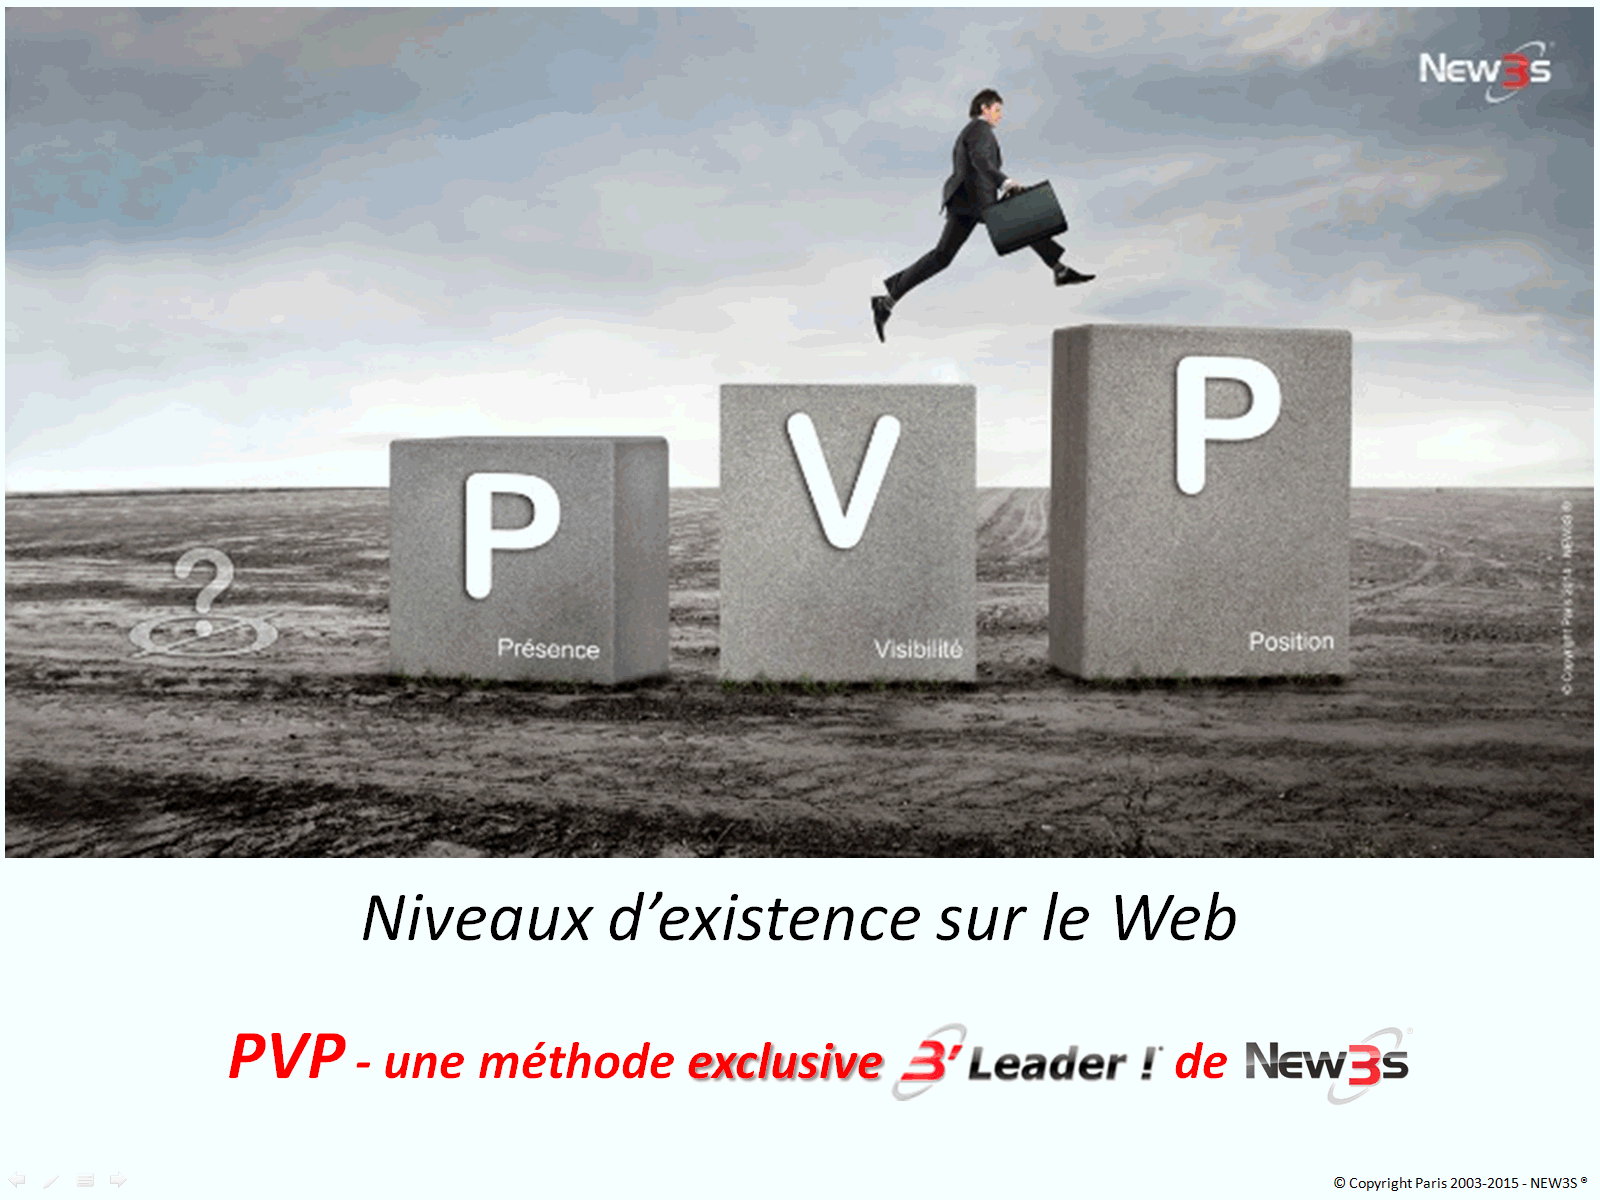 pvp-présence-visibilite-positionnement-web-internet-referencement